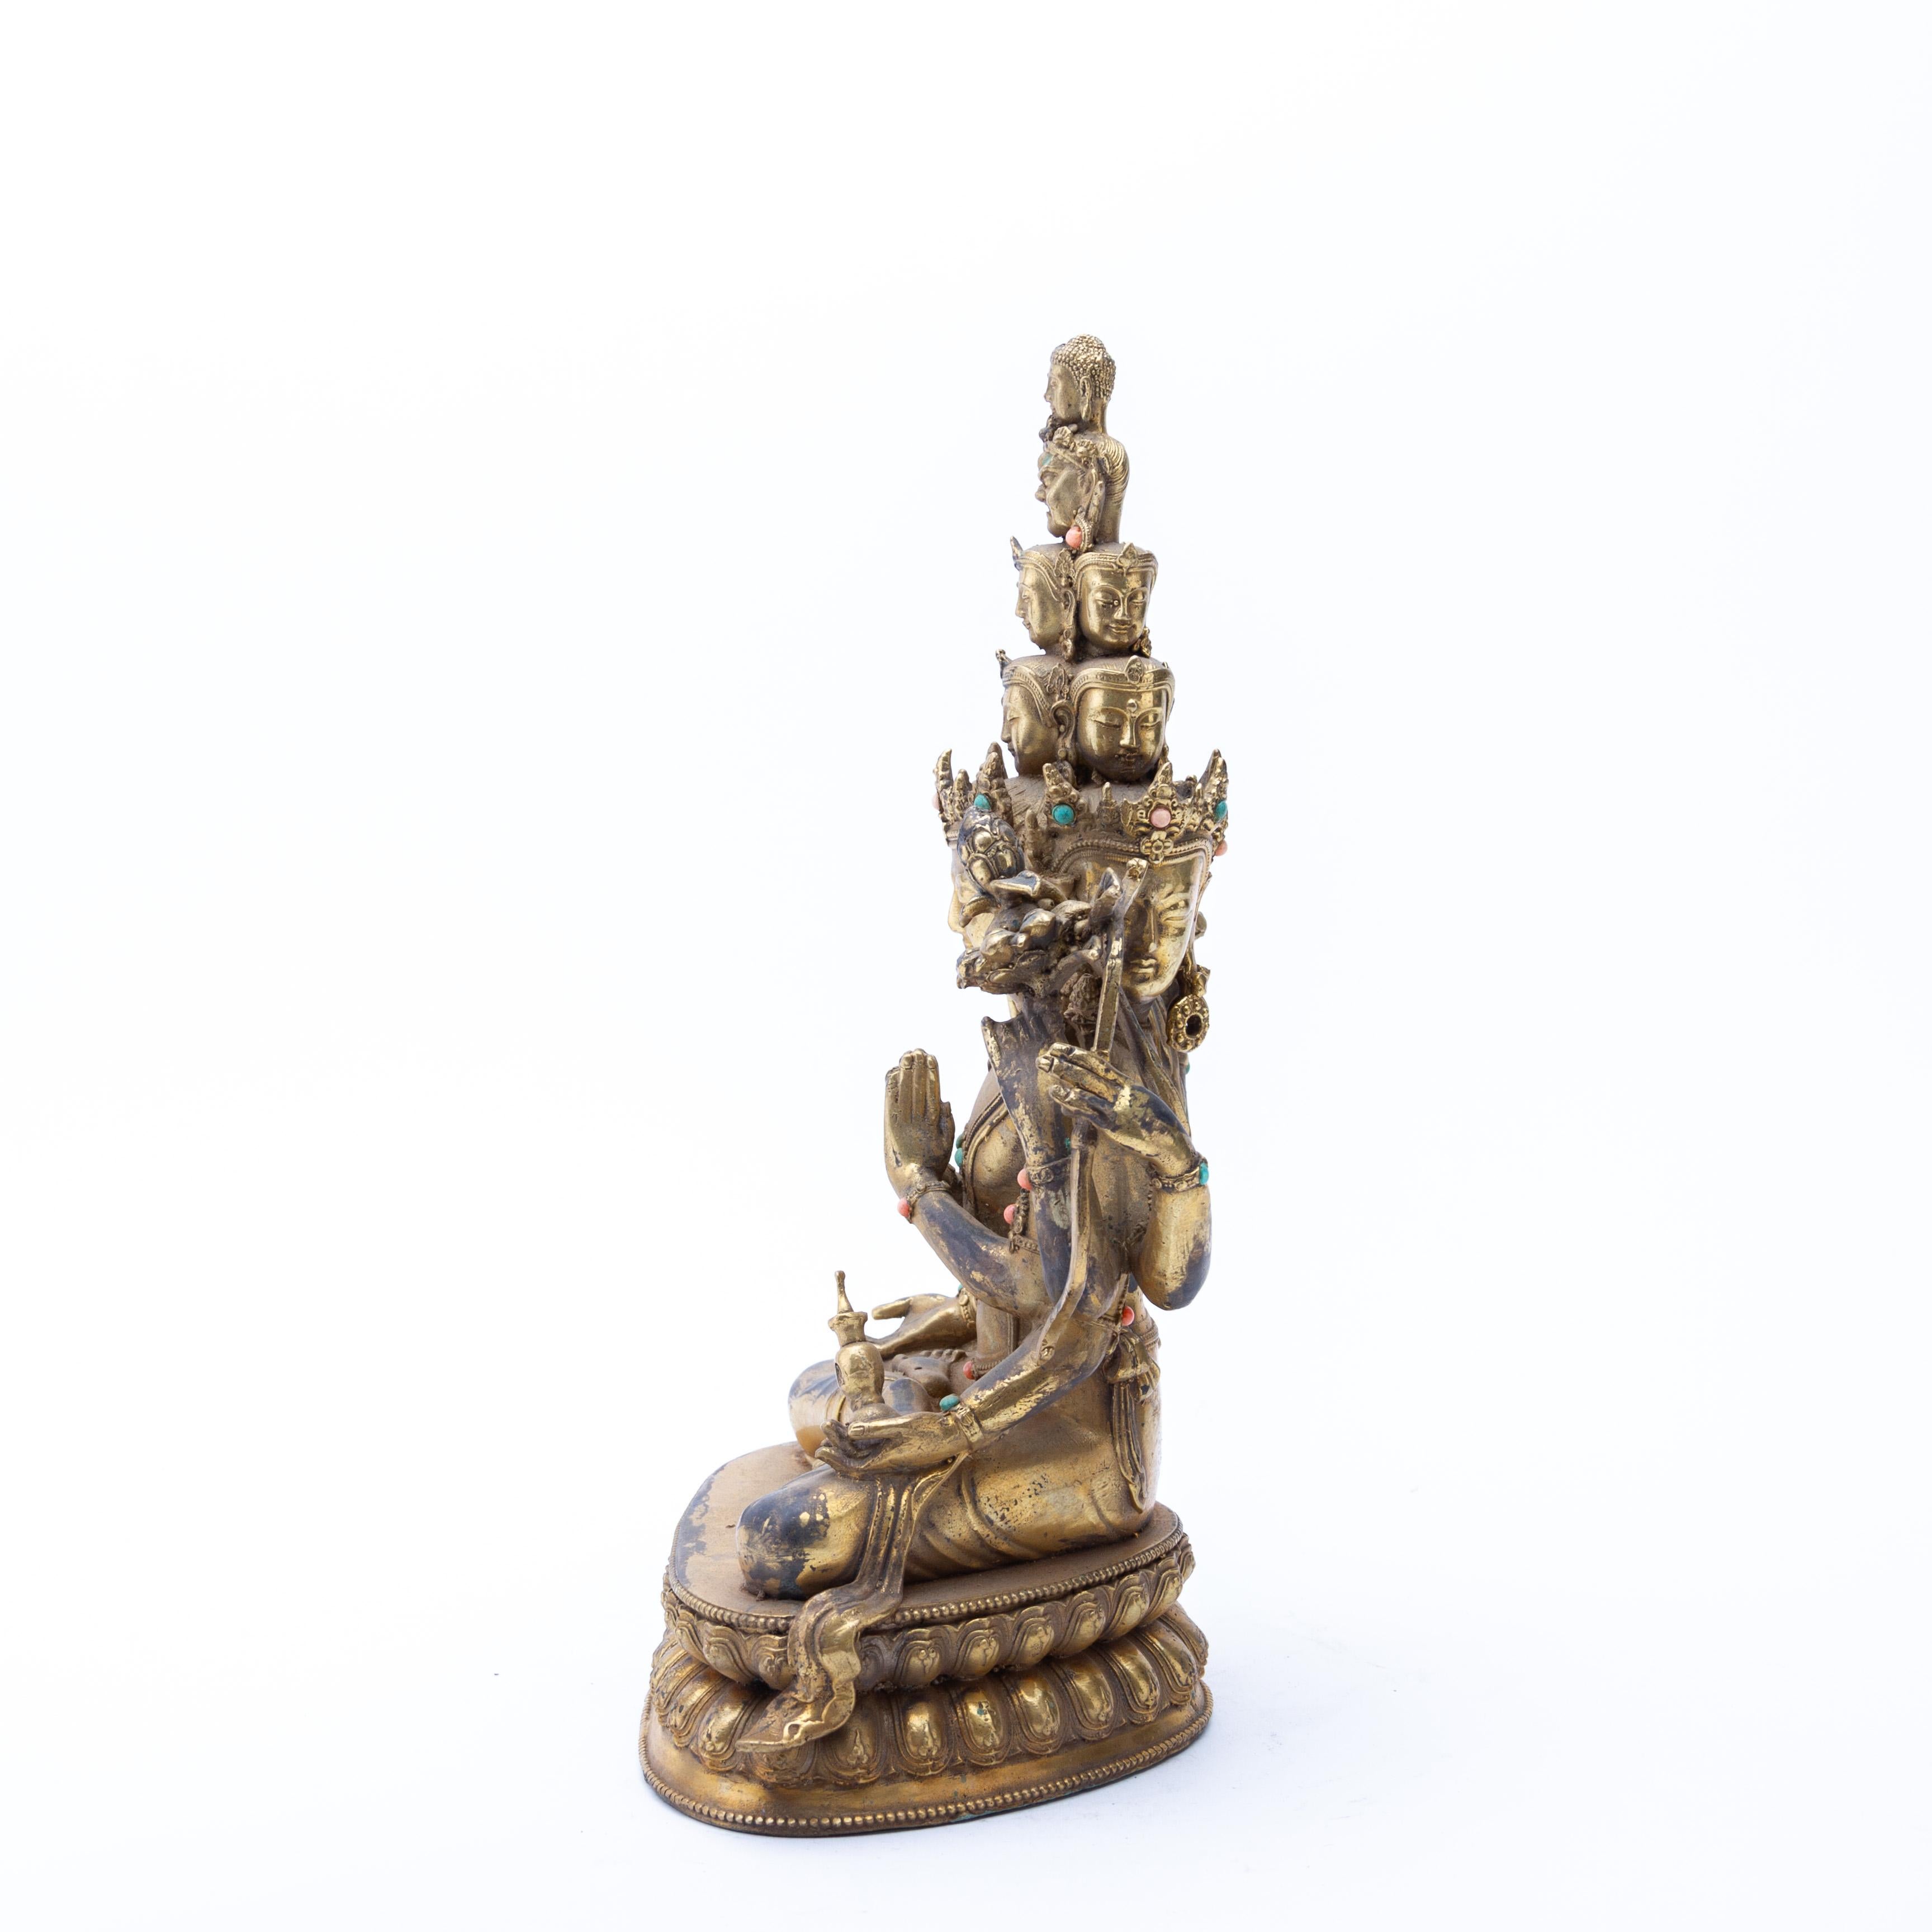 Tibetische vergoldete Bronze hinduistische buddhistische Skulptur von Guanyin Bodhisattva Ende 19. (19. Jahrhundert)